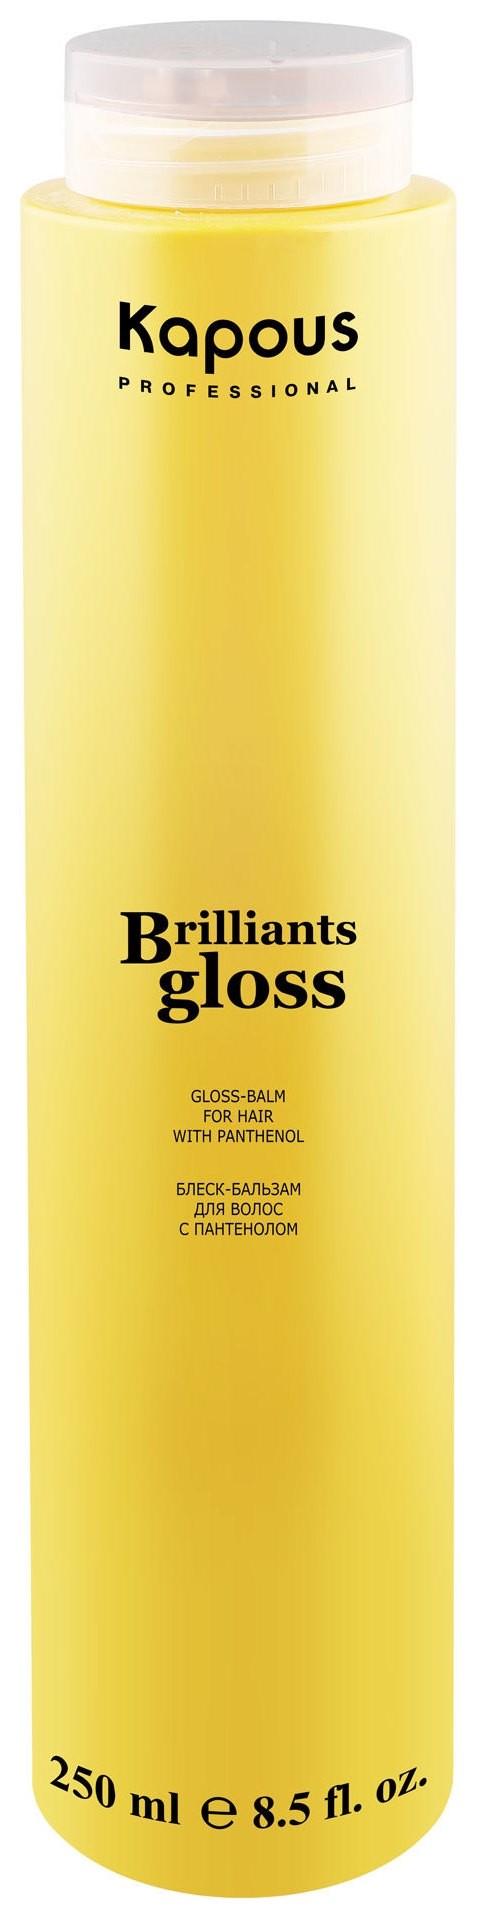 Блеск-бальзам для волос "Brilliants gloss" отзывы